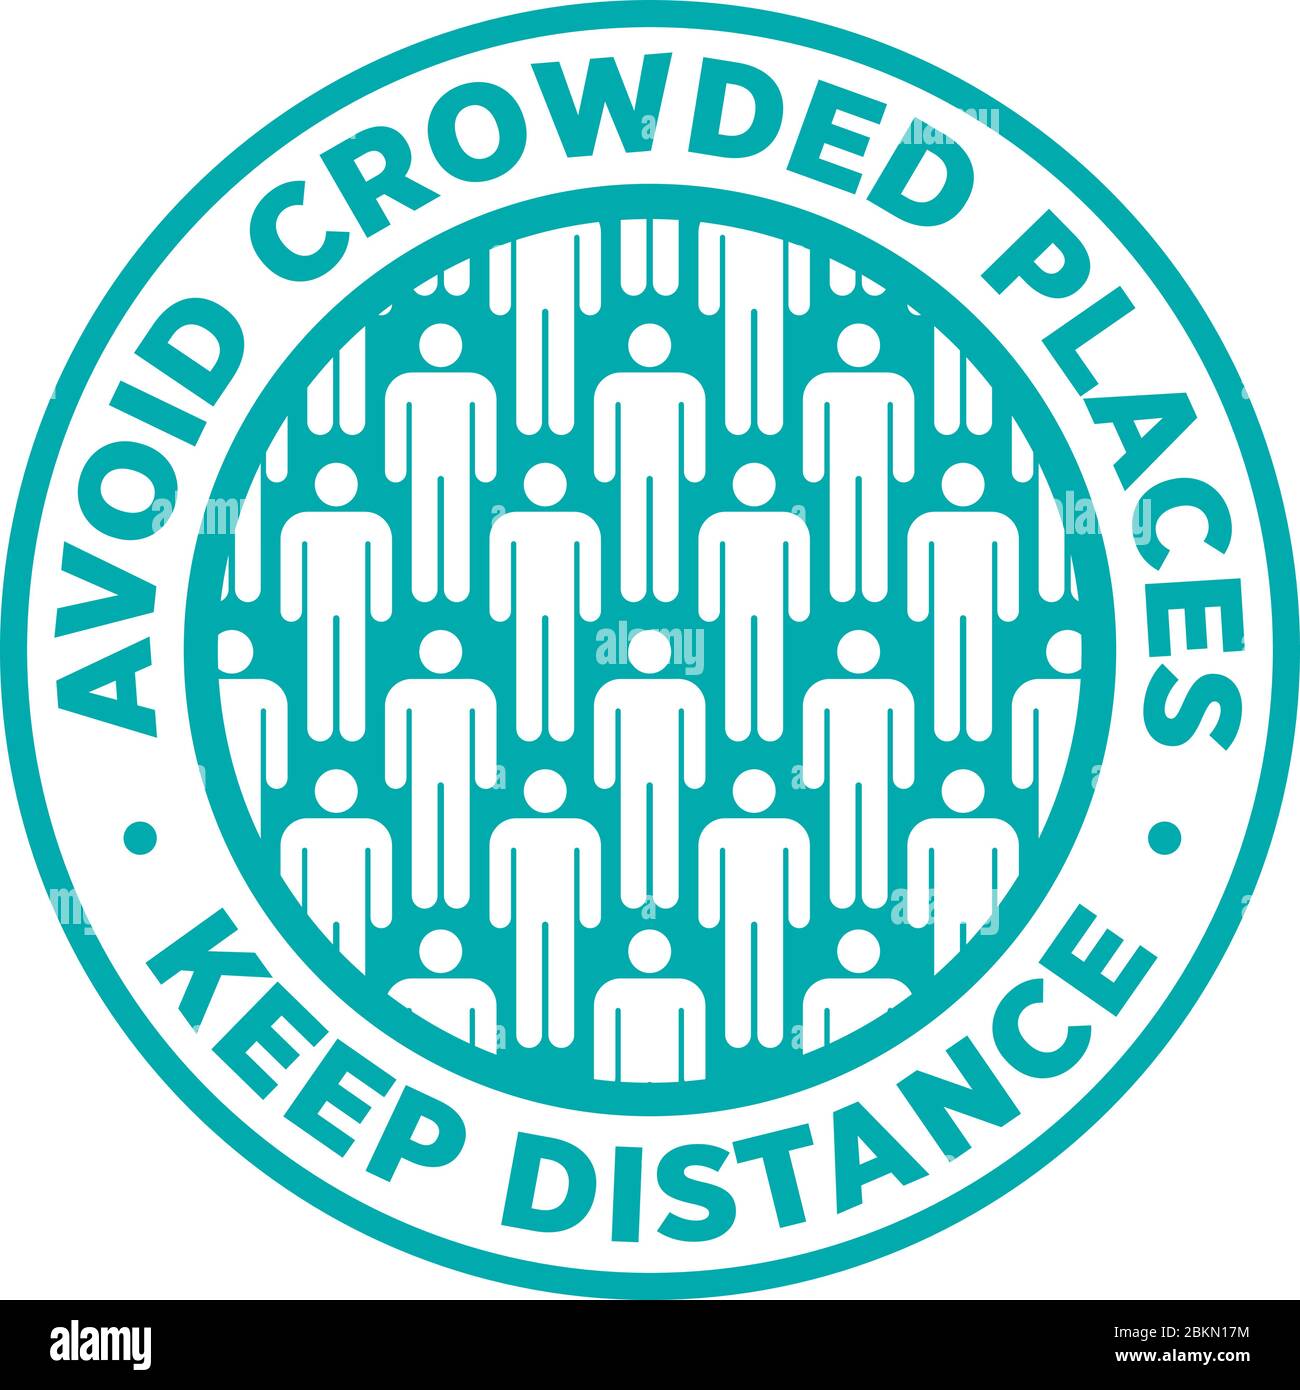 Vermeiden Sie überfüllte Plätze Halten Sie Social Distance Sticker für helfen, das Risiko des Fangen Coronavirus Covid-19 zu reduzieren. Vektorzeichen. Stock Vektor